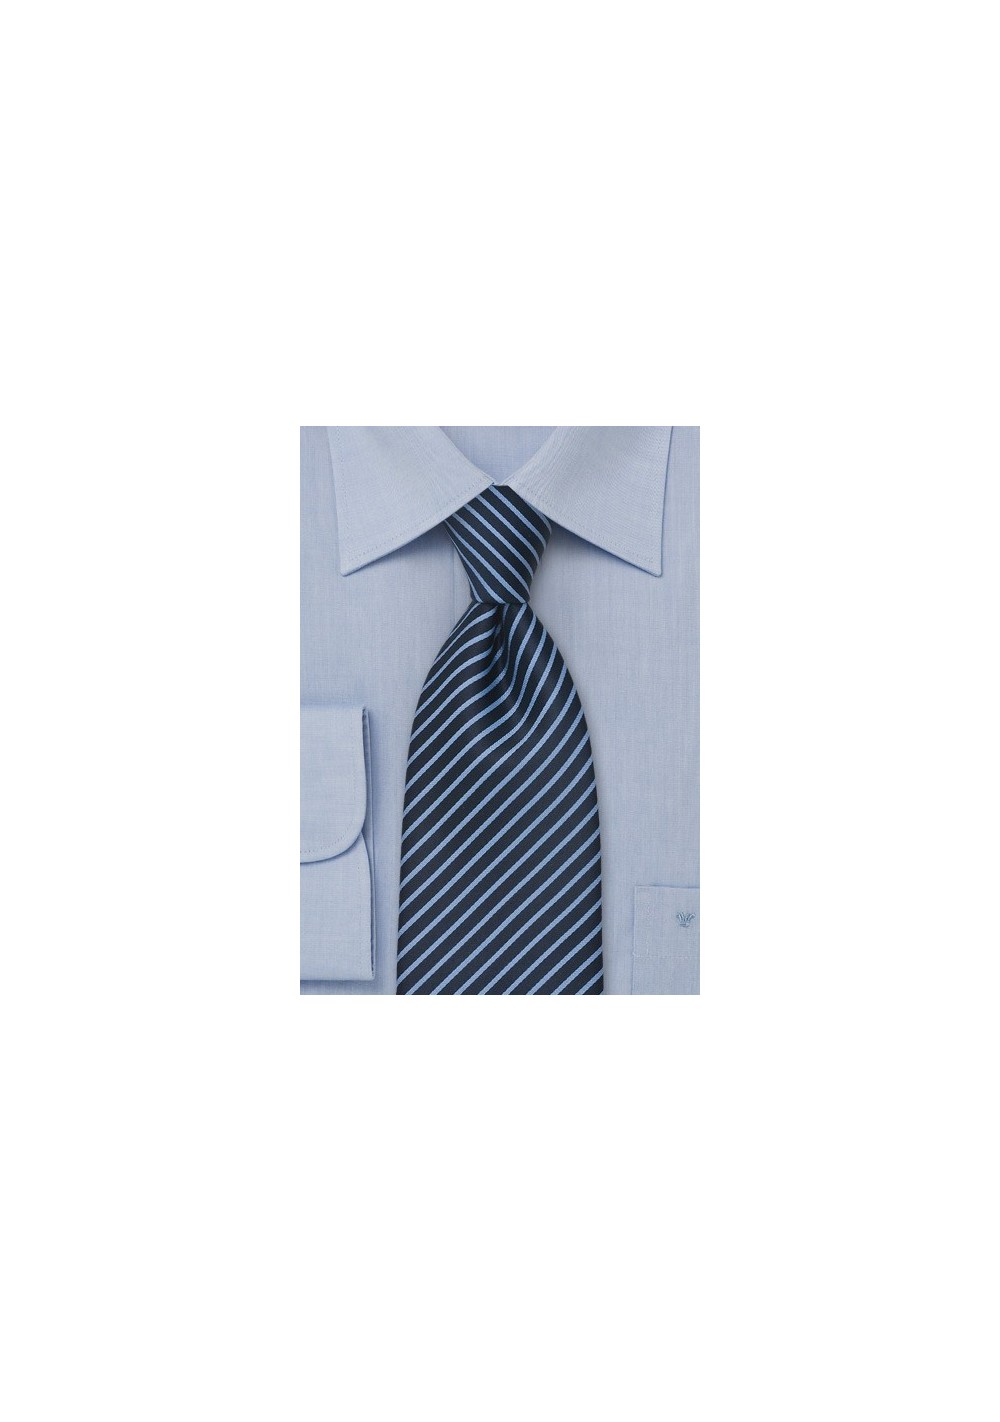 Modern Blue Striped Necktie